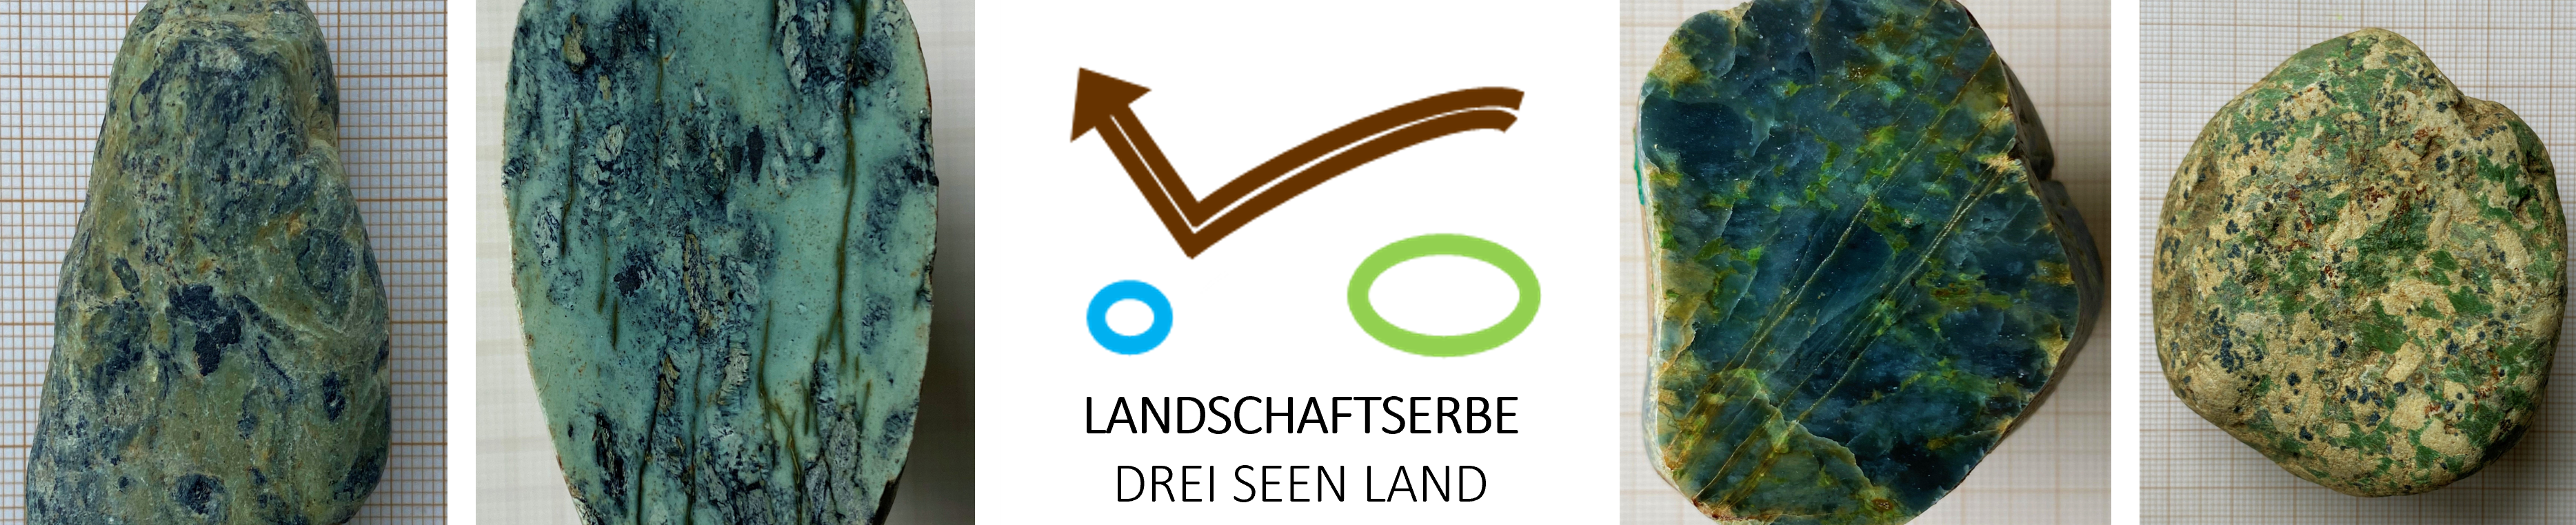 Landschaftserbe Drei-Seen-Land